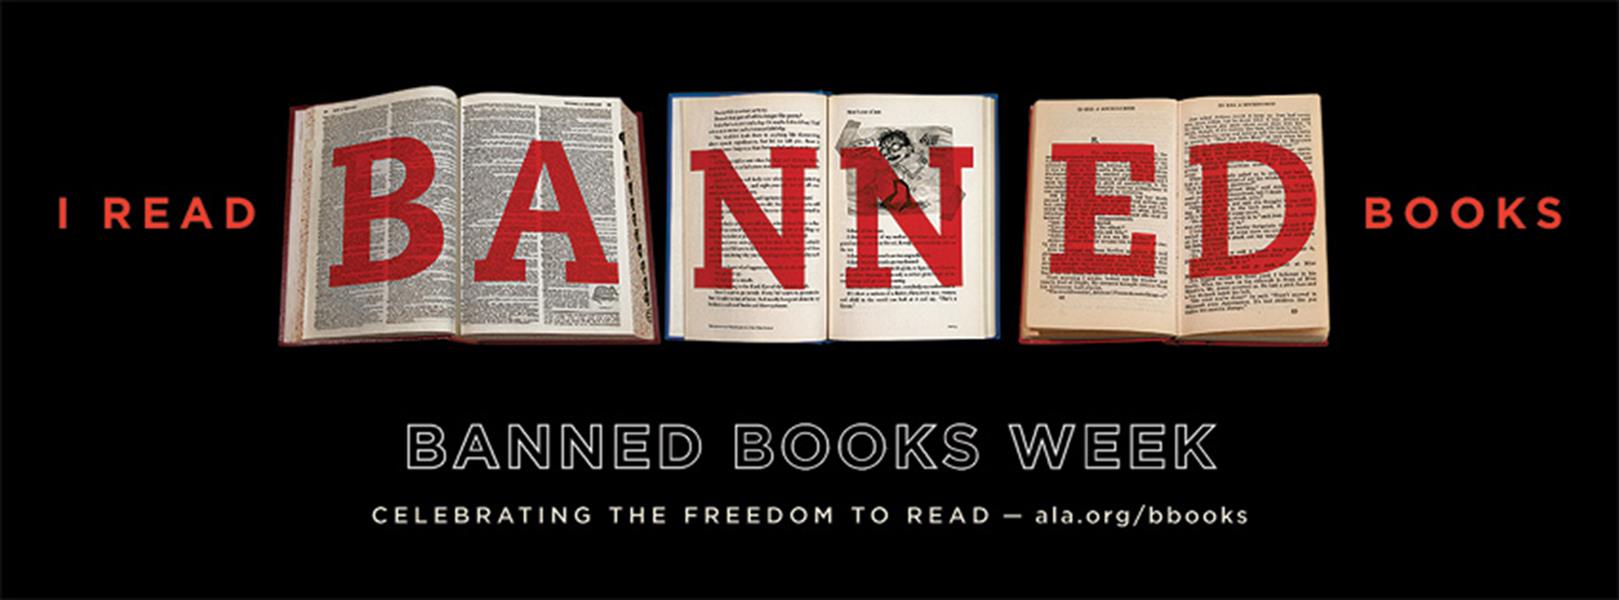 أميركا تحتفل بأسبوع الكتب المحظورة